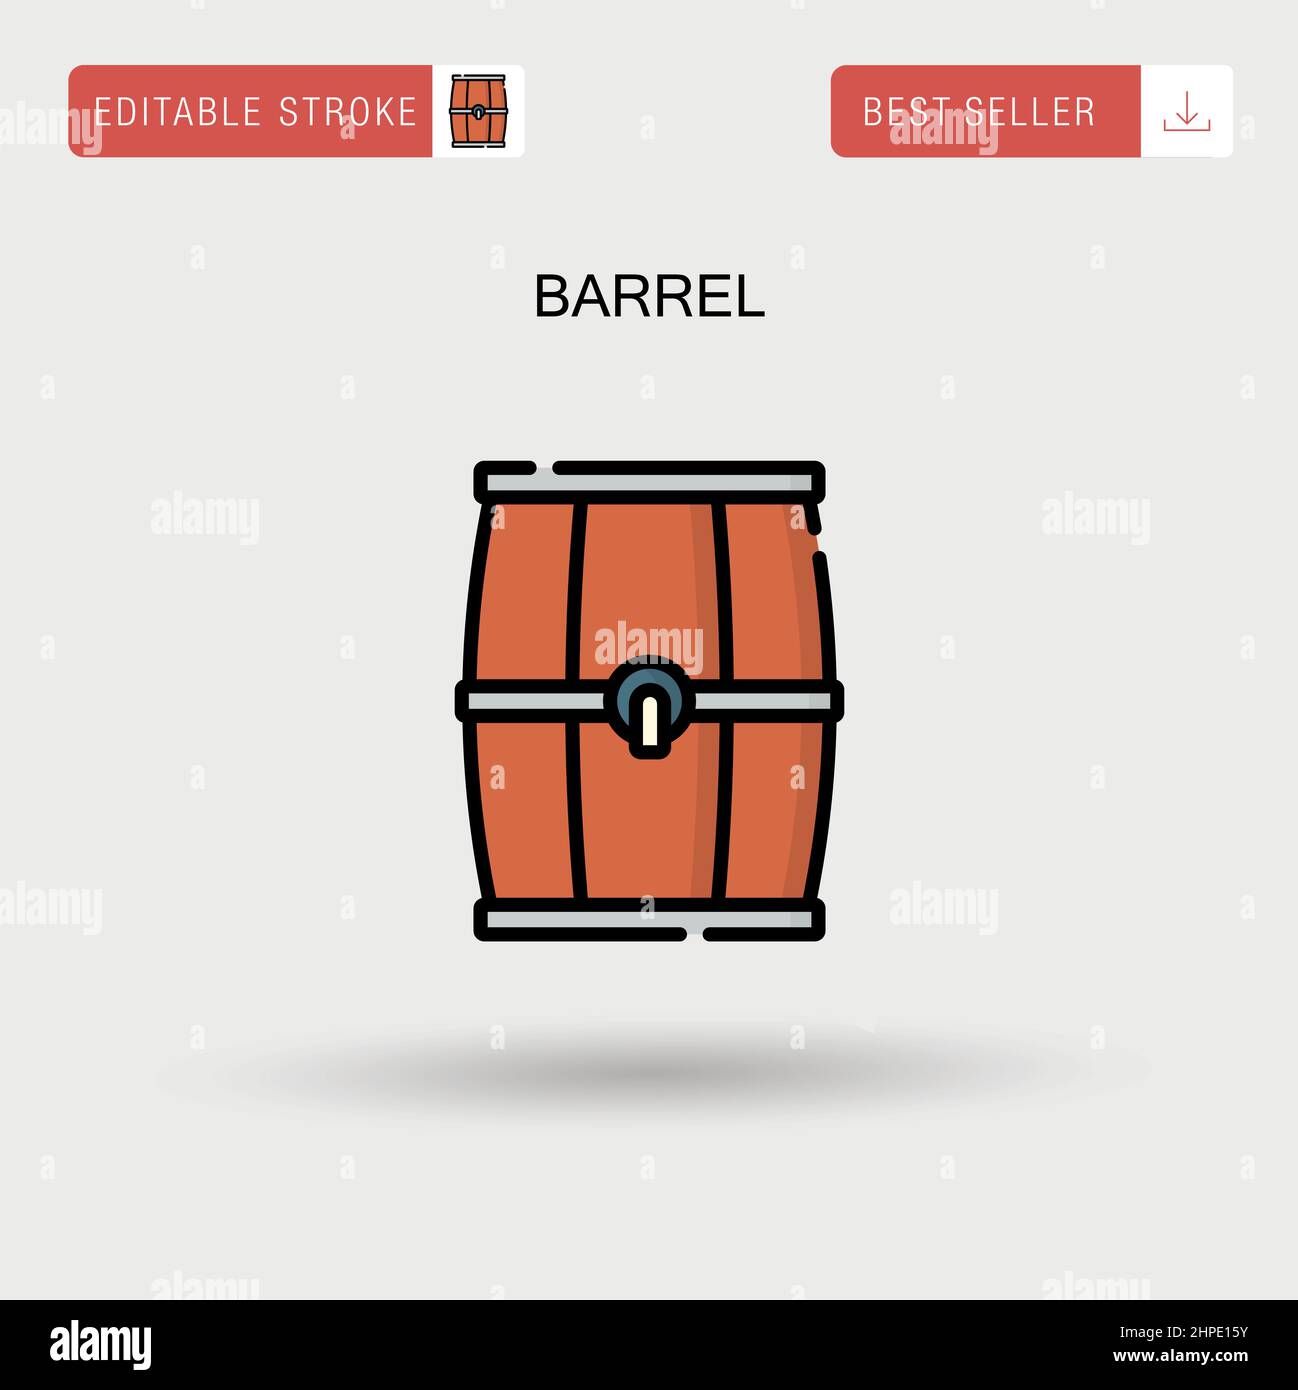 Barrel Simple vector icon. Stock Vector